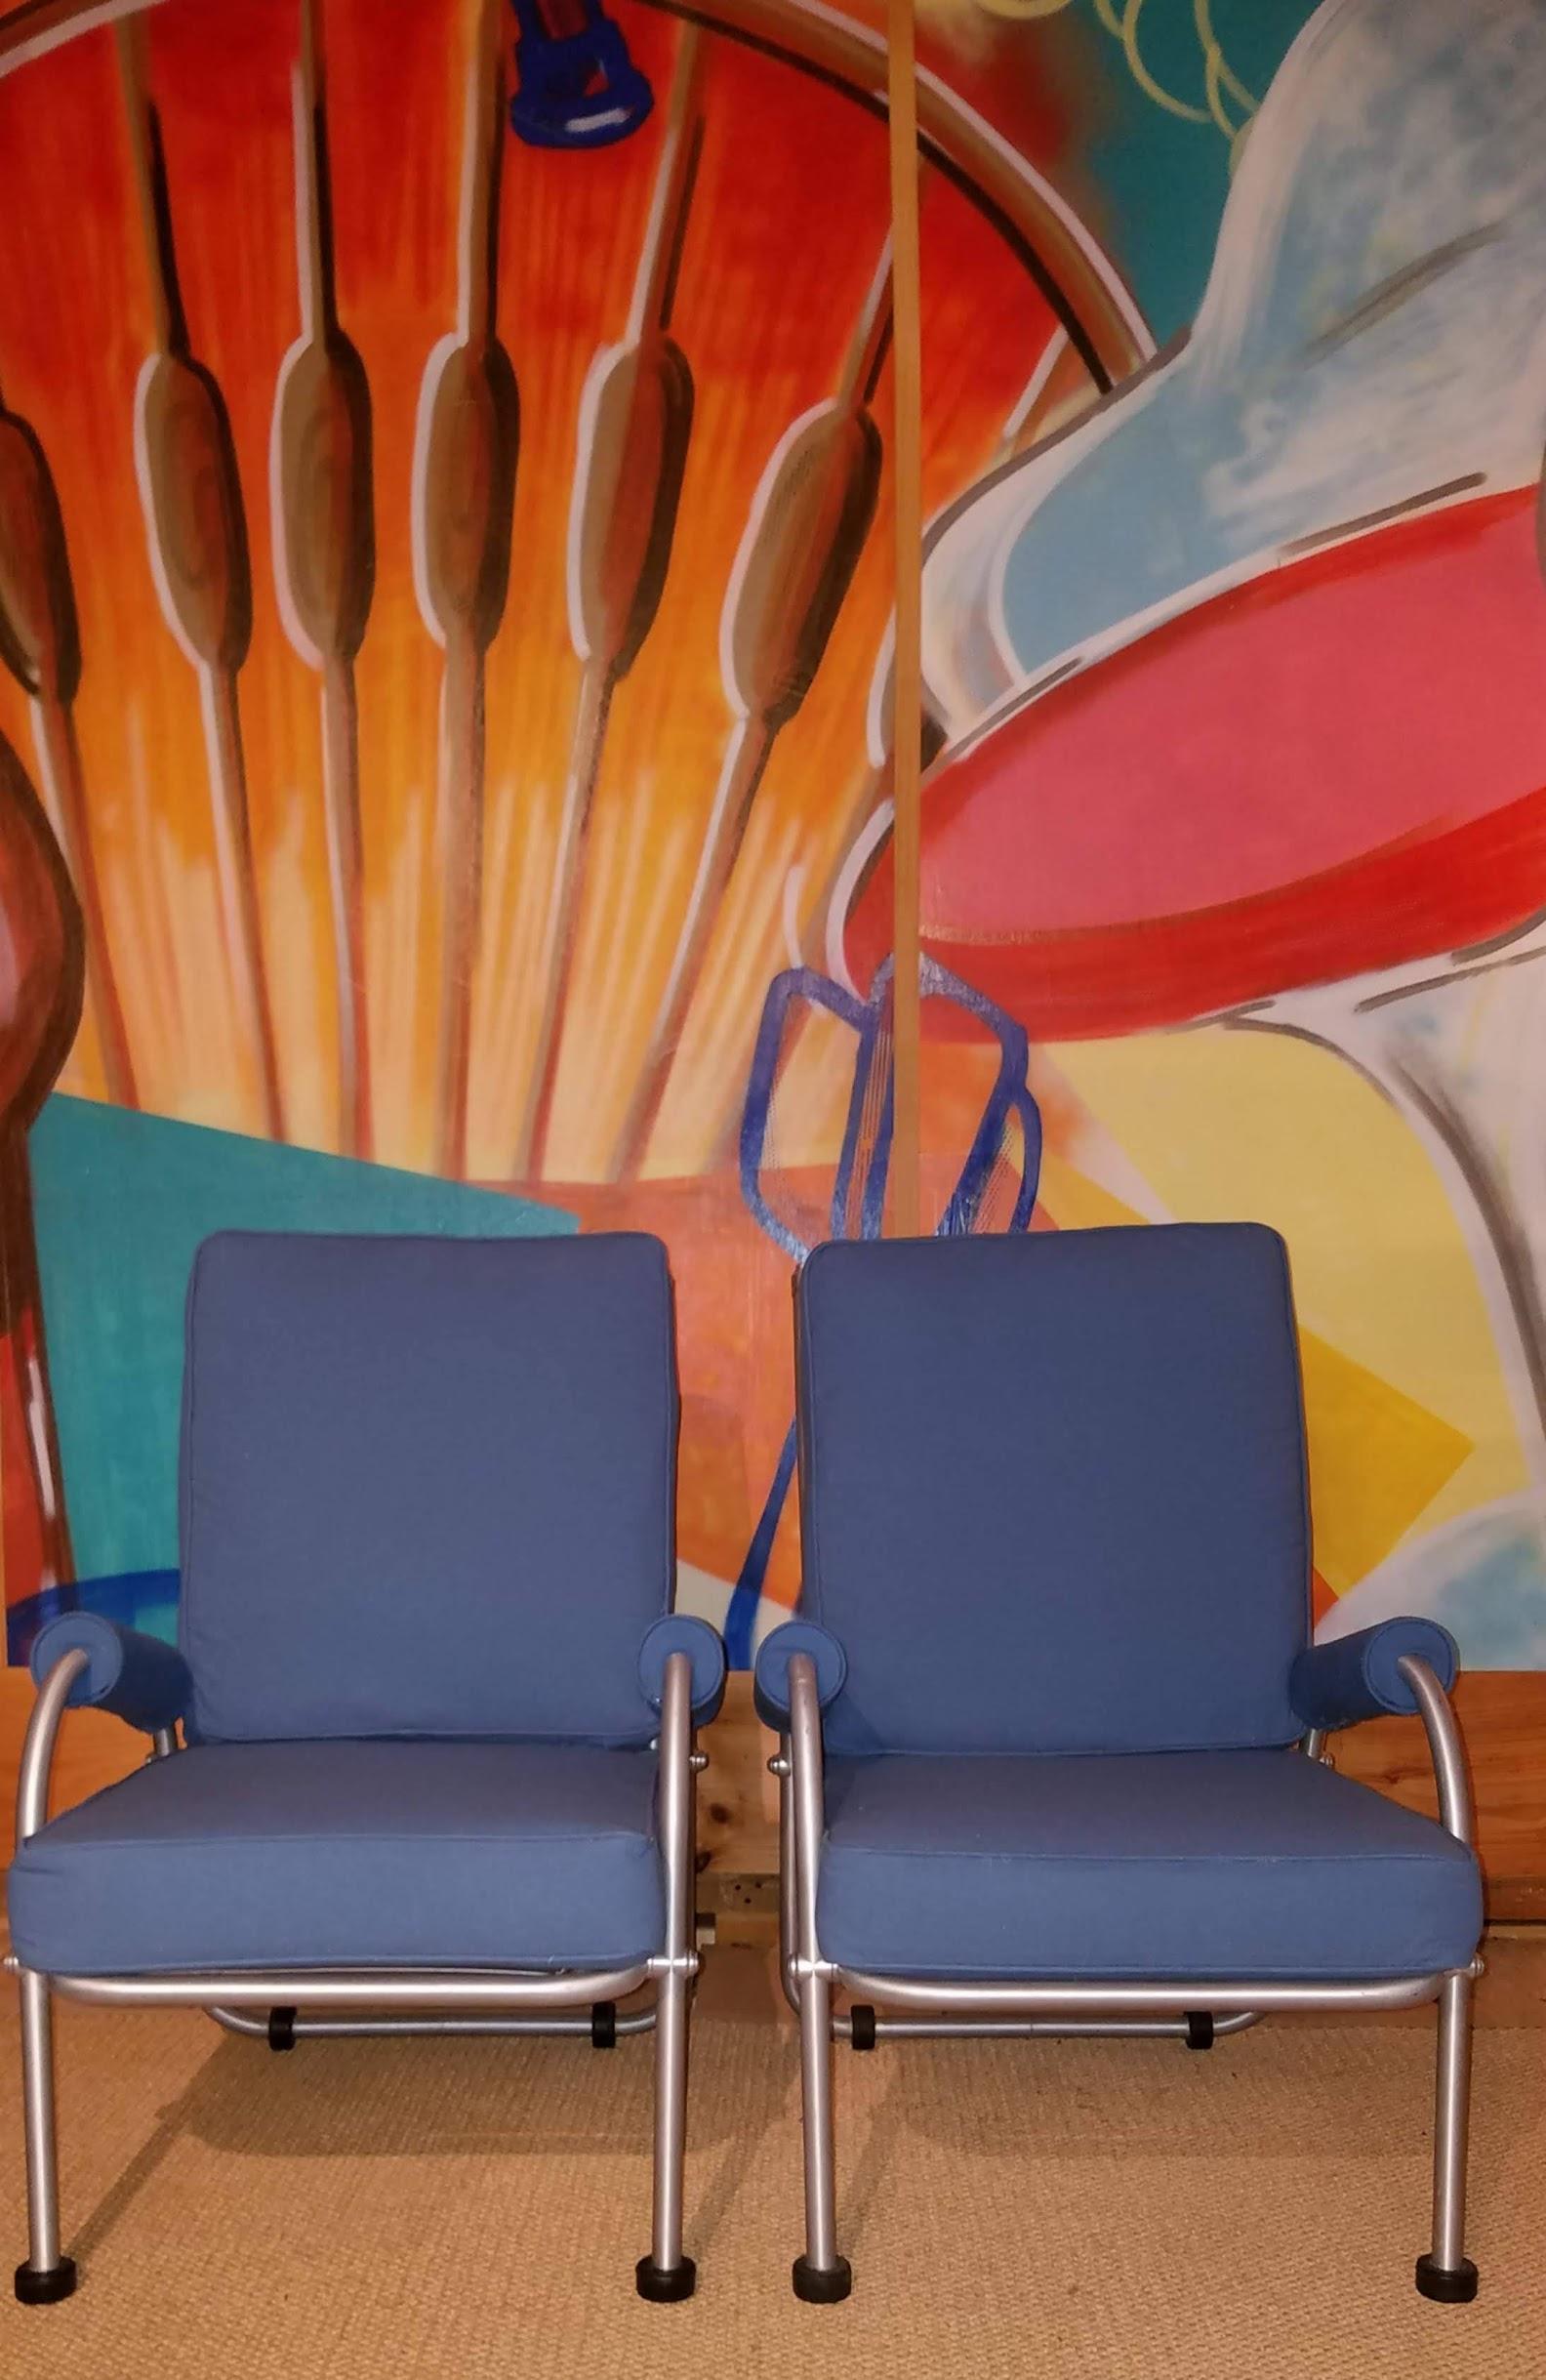 Suite de quatre chaises longues Warren McArthur vers la fin des années 1930. Ces exemples, rarement vus, conservent la finition d'origine de leurs cadres tubulaires en aluminium. Ils ont été nouvellement tapissés dans un canard bleu tel qu'offert à